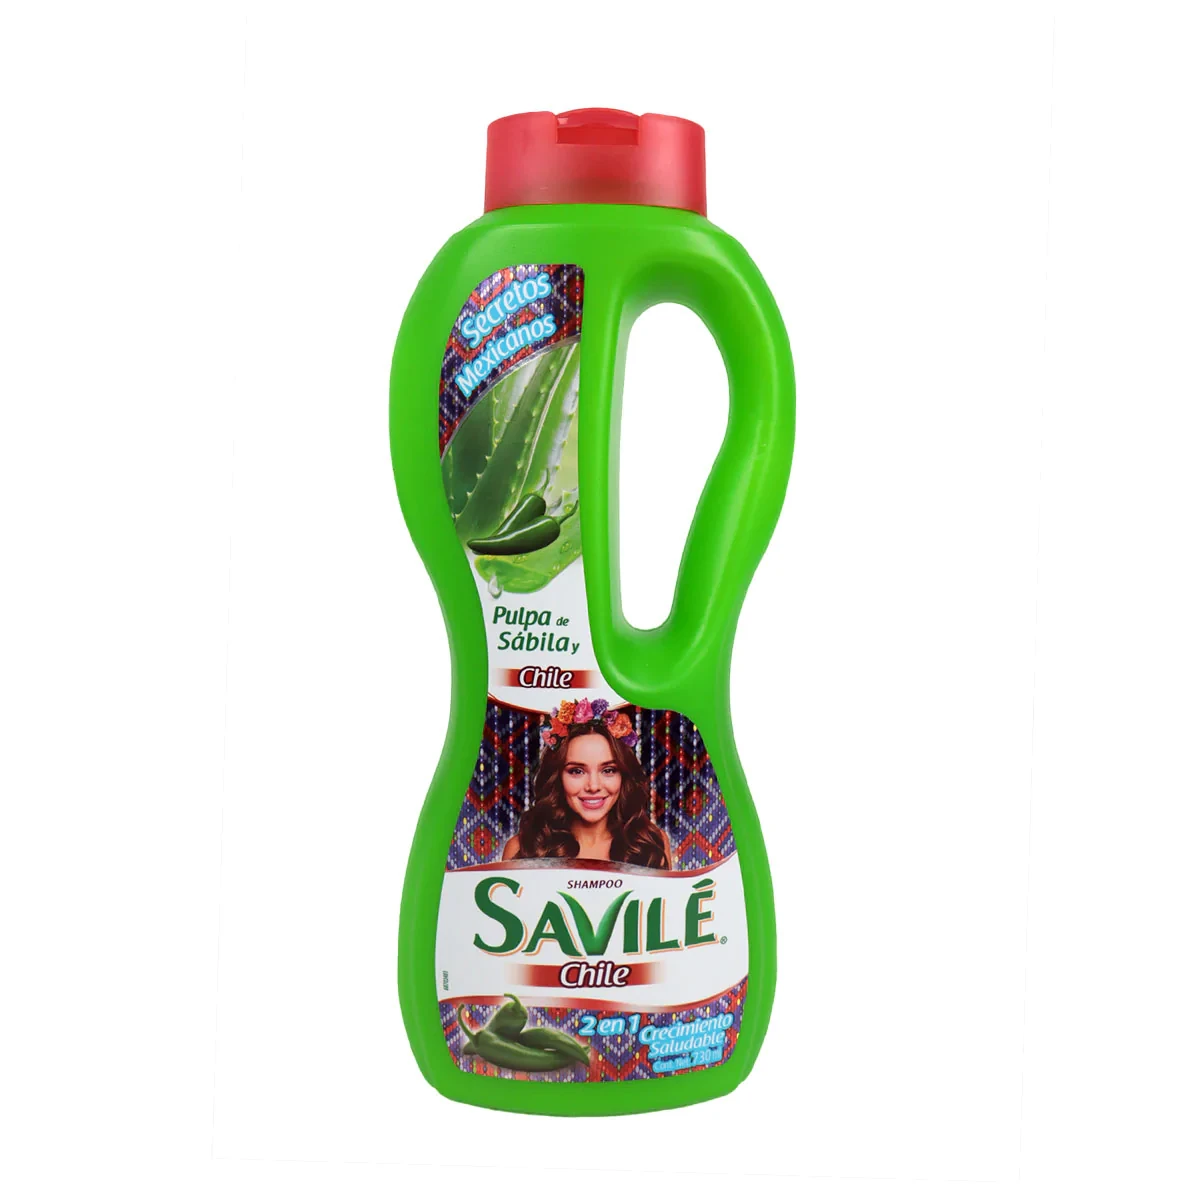 Shampoo Savilé chile 2en1 730 ml